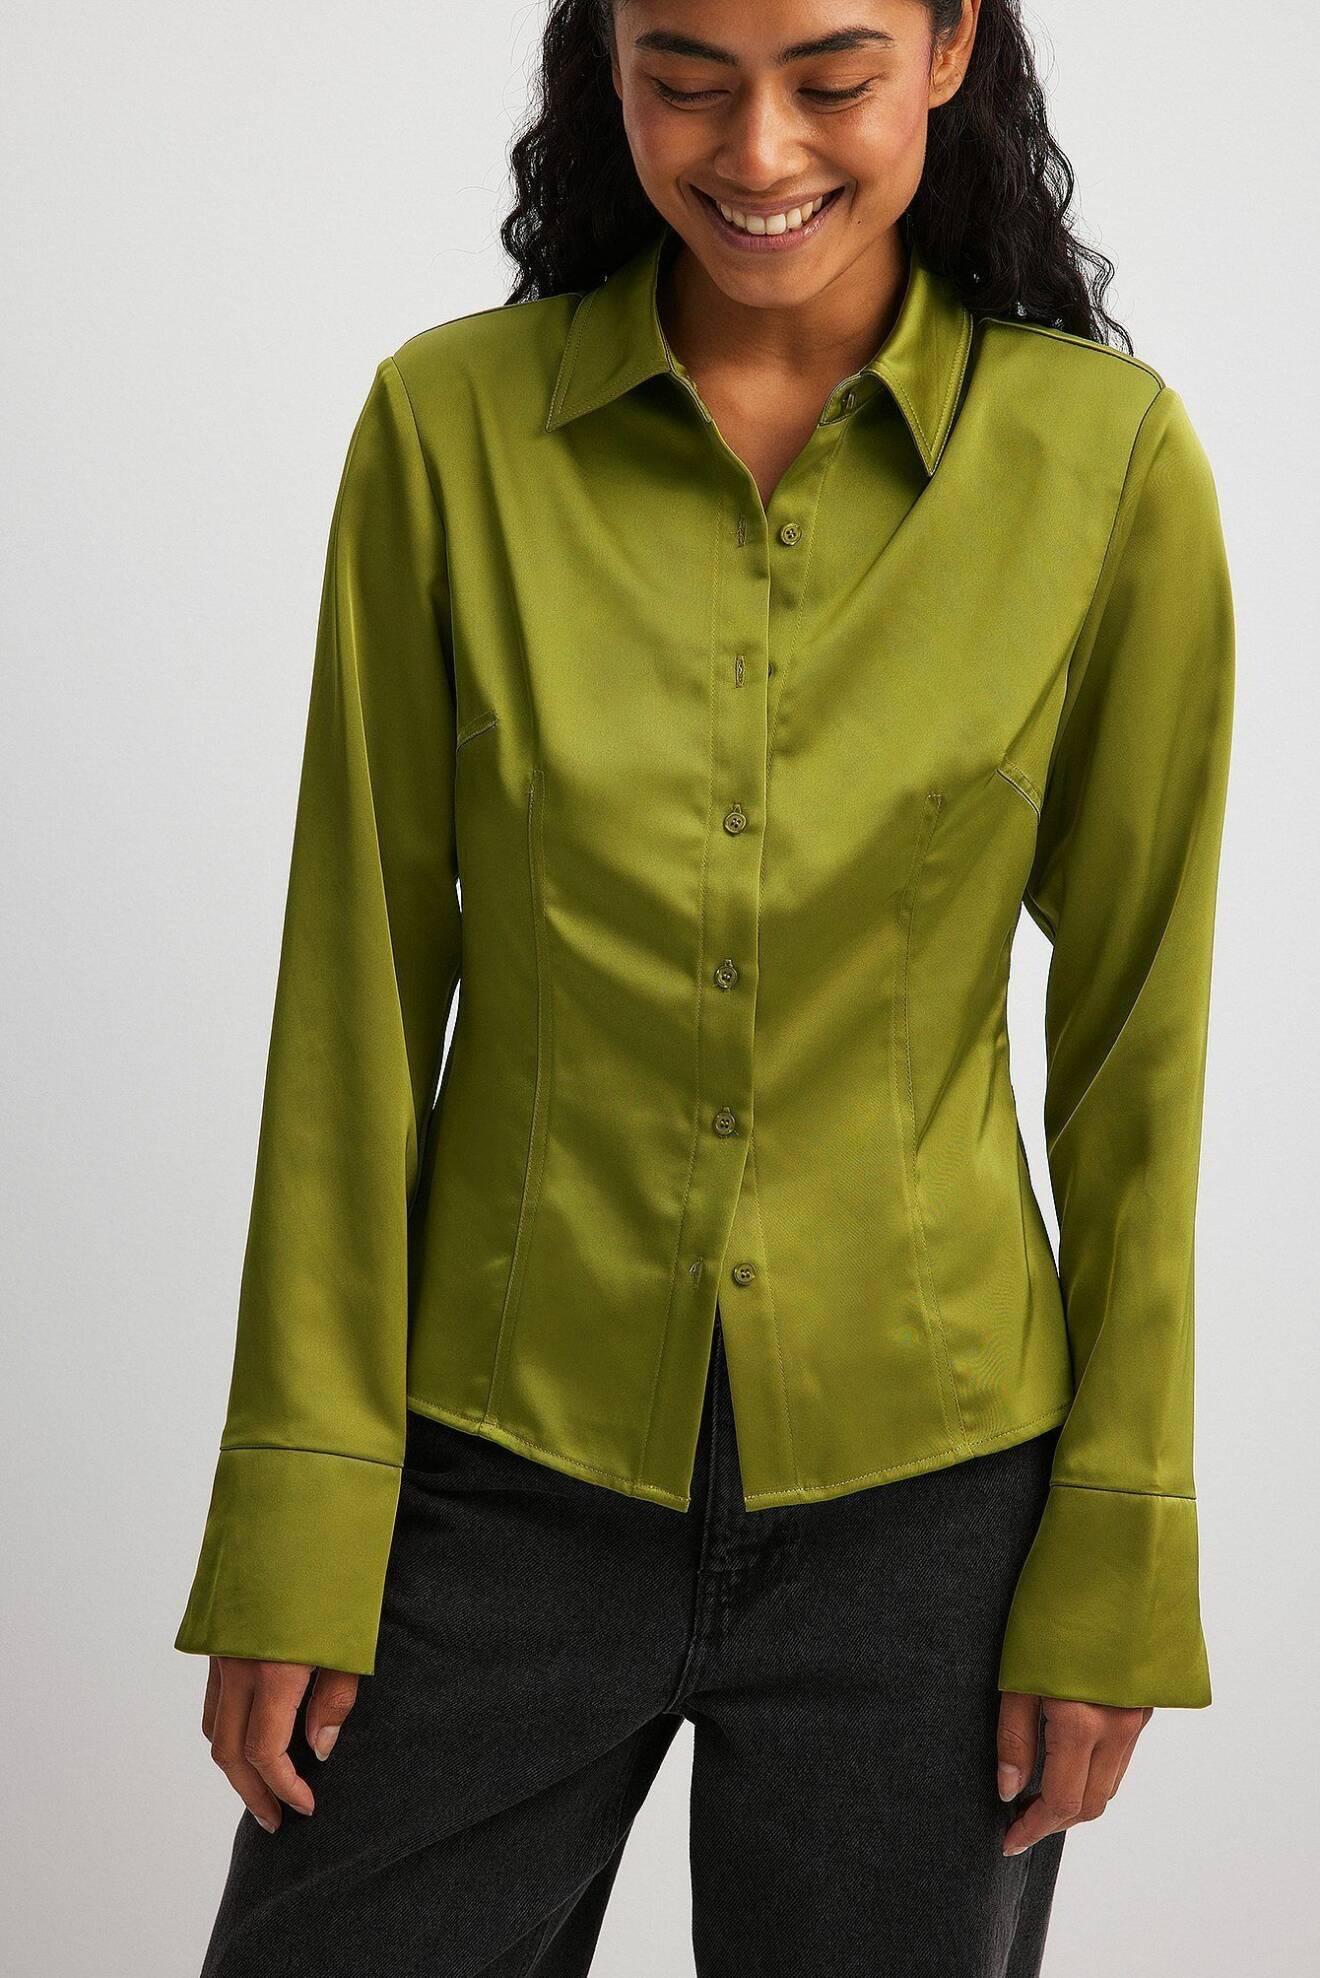 grön skjorta i satin med knappar och slitsdetalj på muddarna från Na-kd